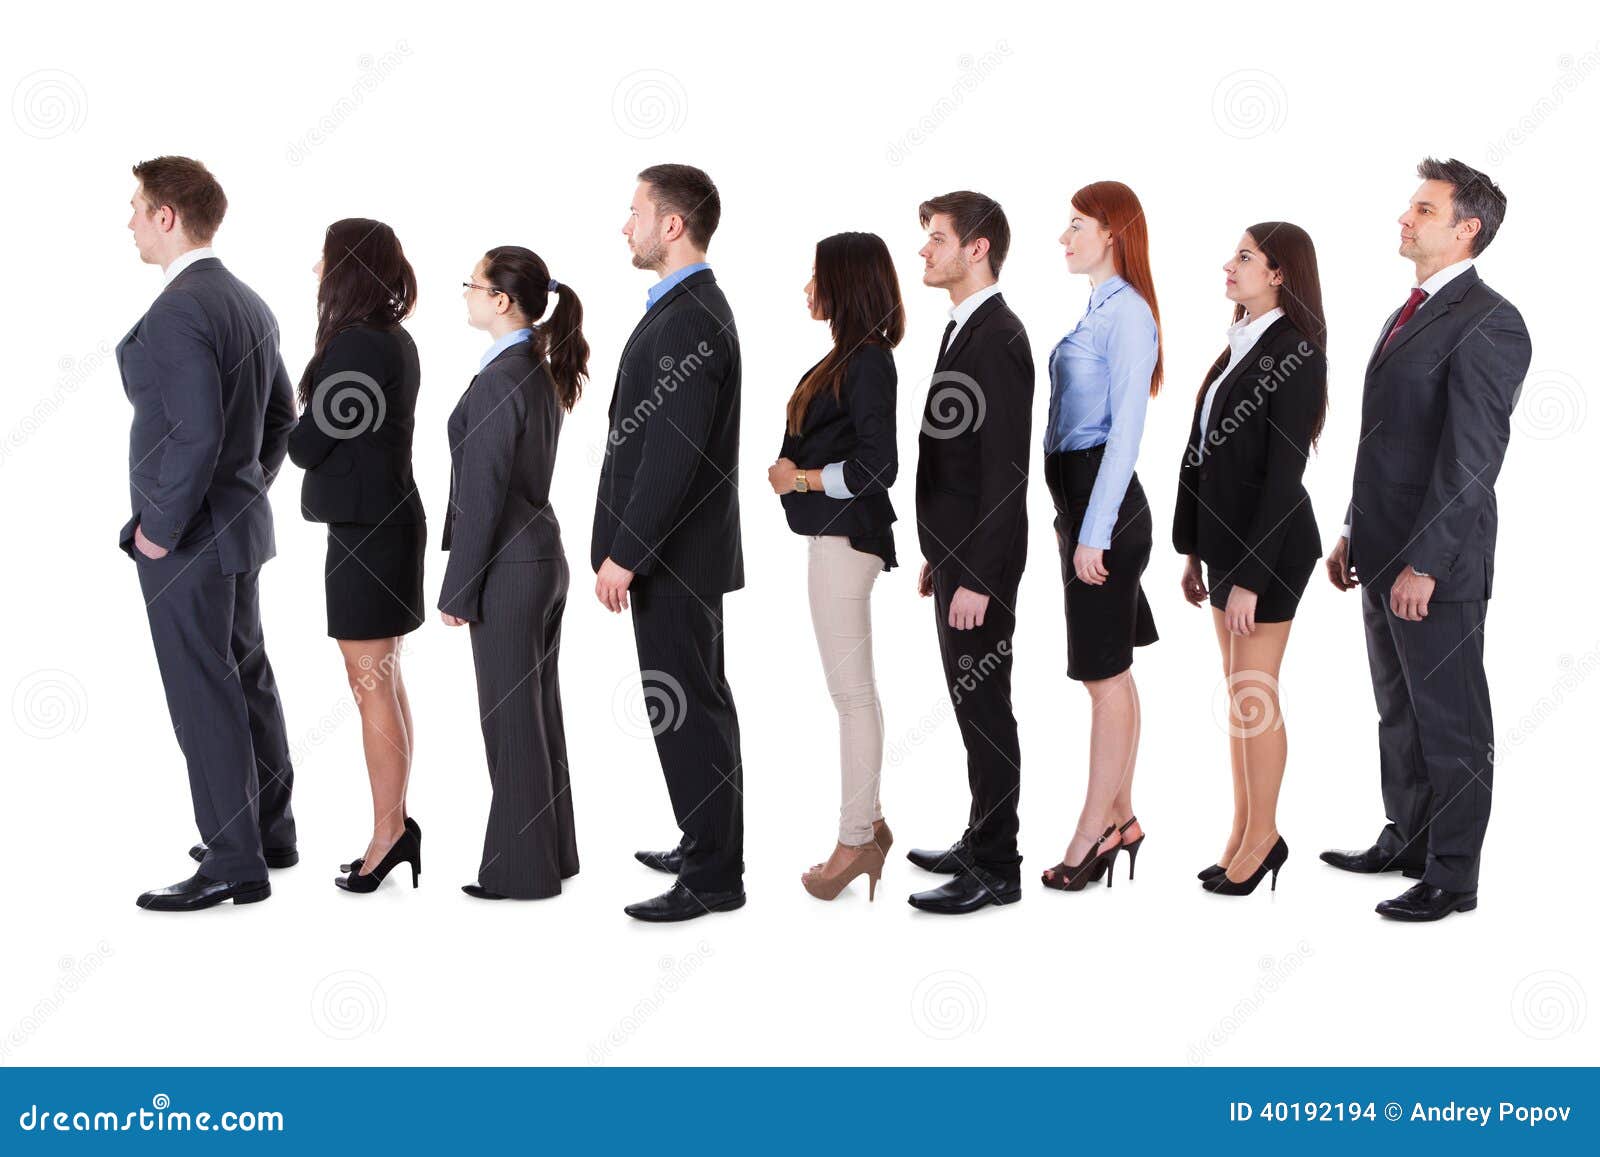 business people standing in queue